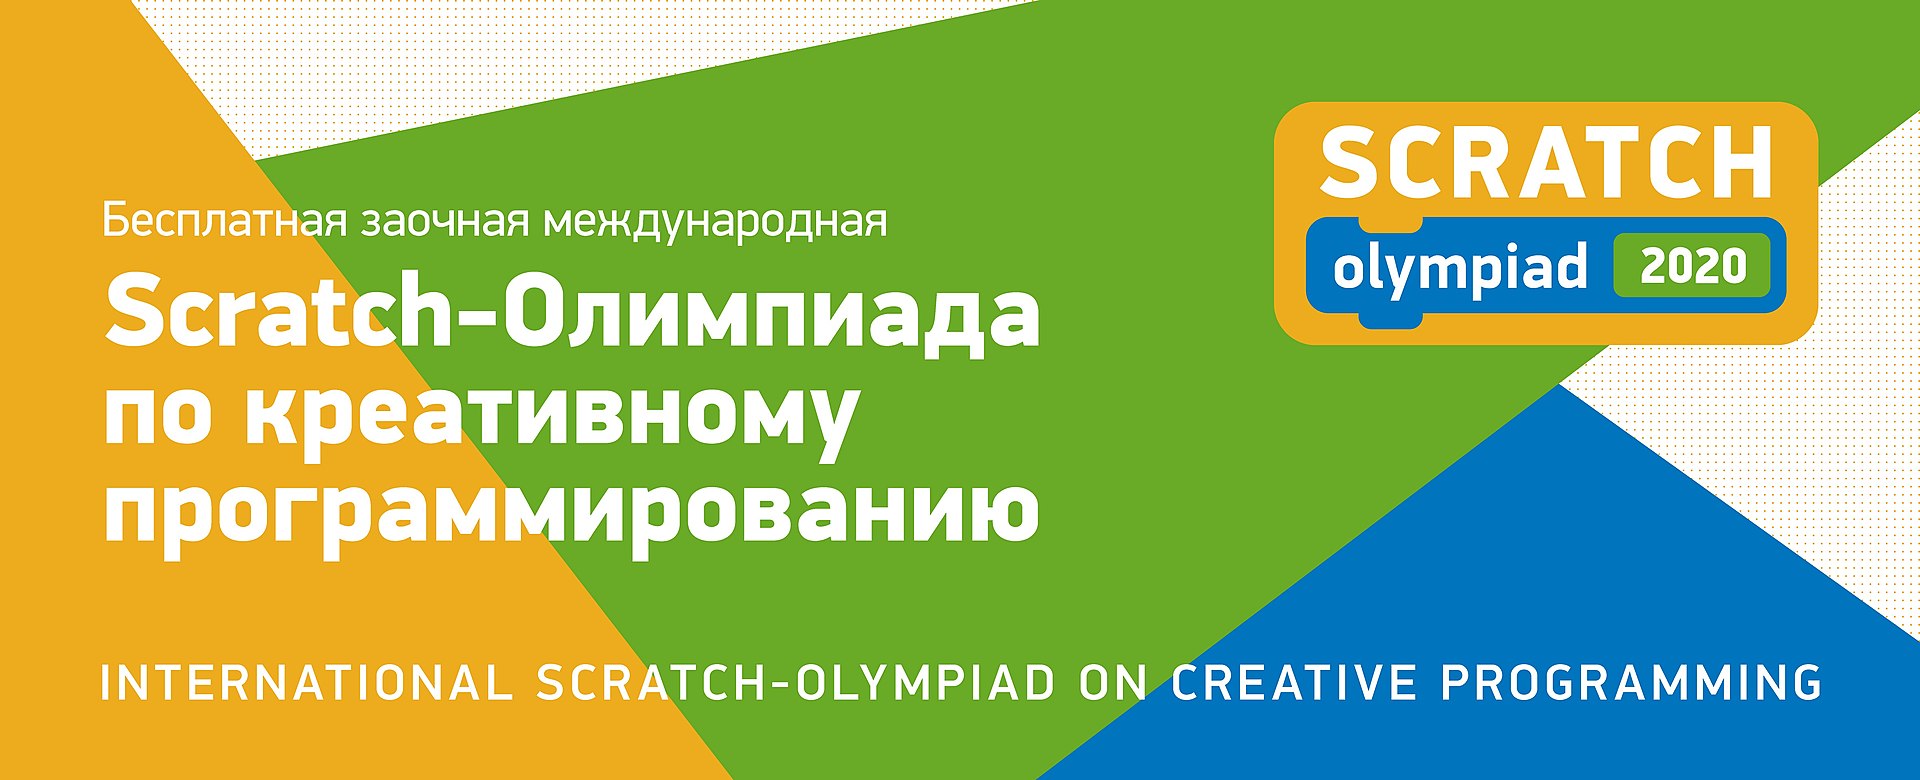 Финал международной Scratch-олимпиады соберет участников из девяти стран